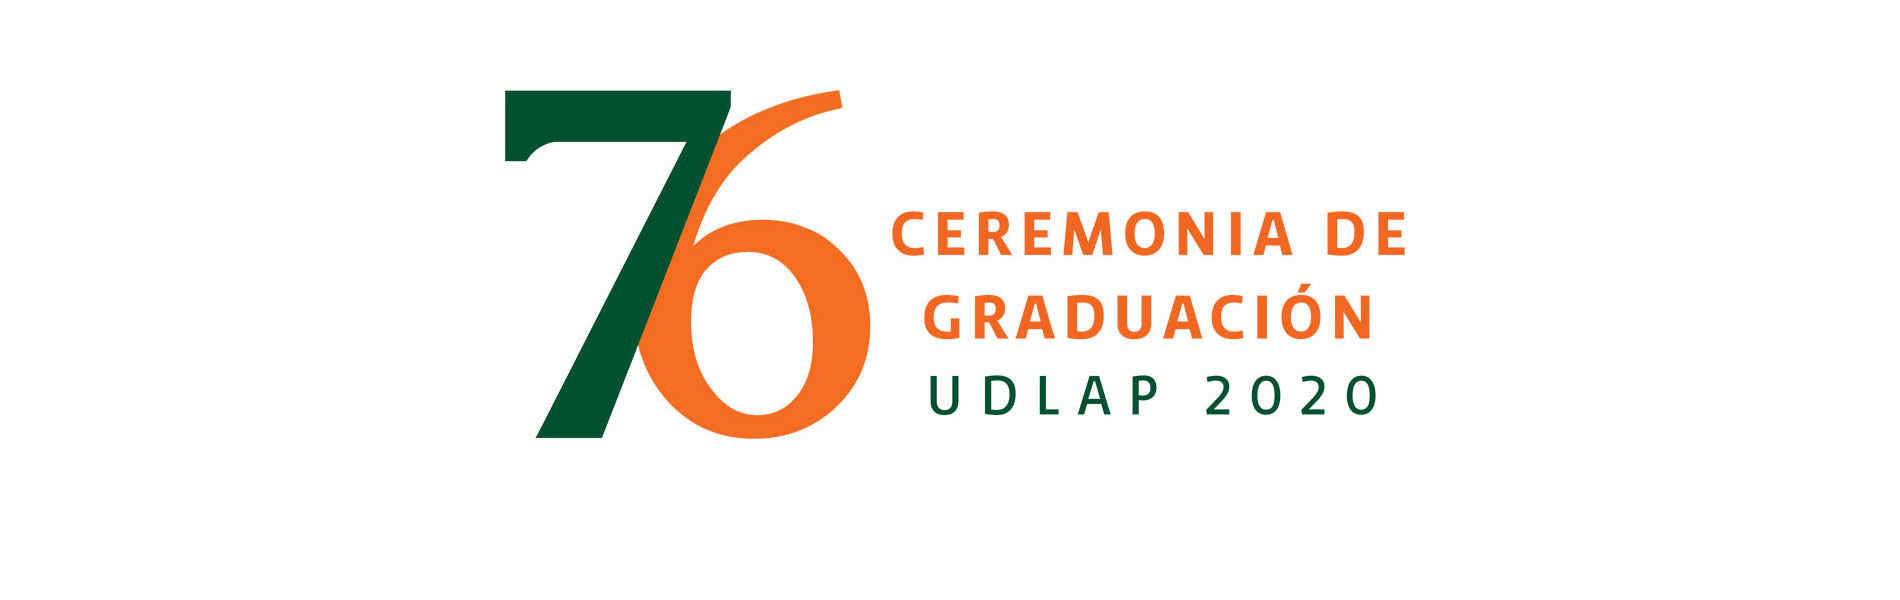 Graduación 76 - UDLAP